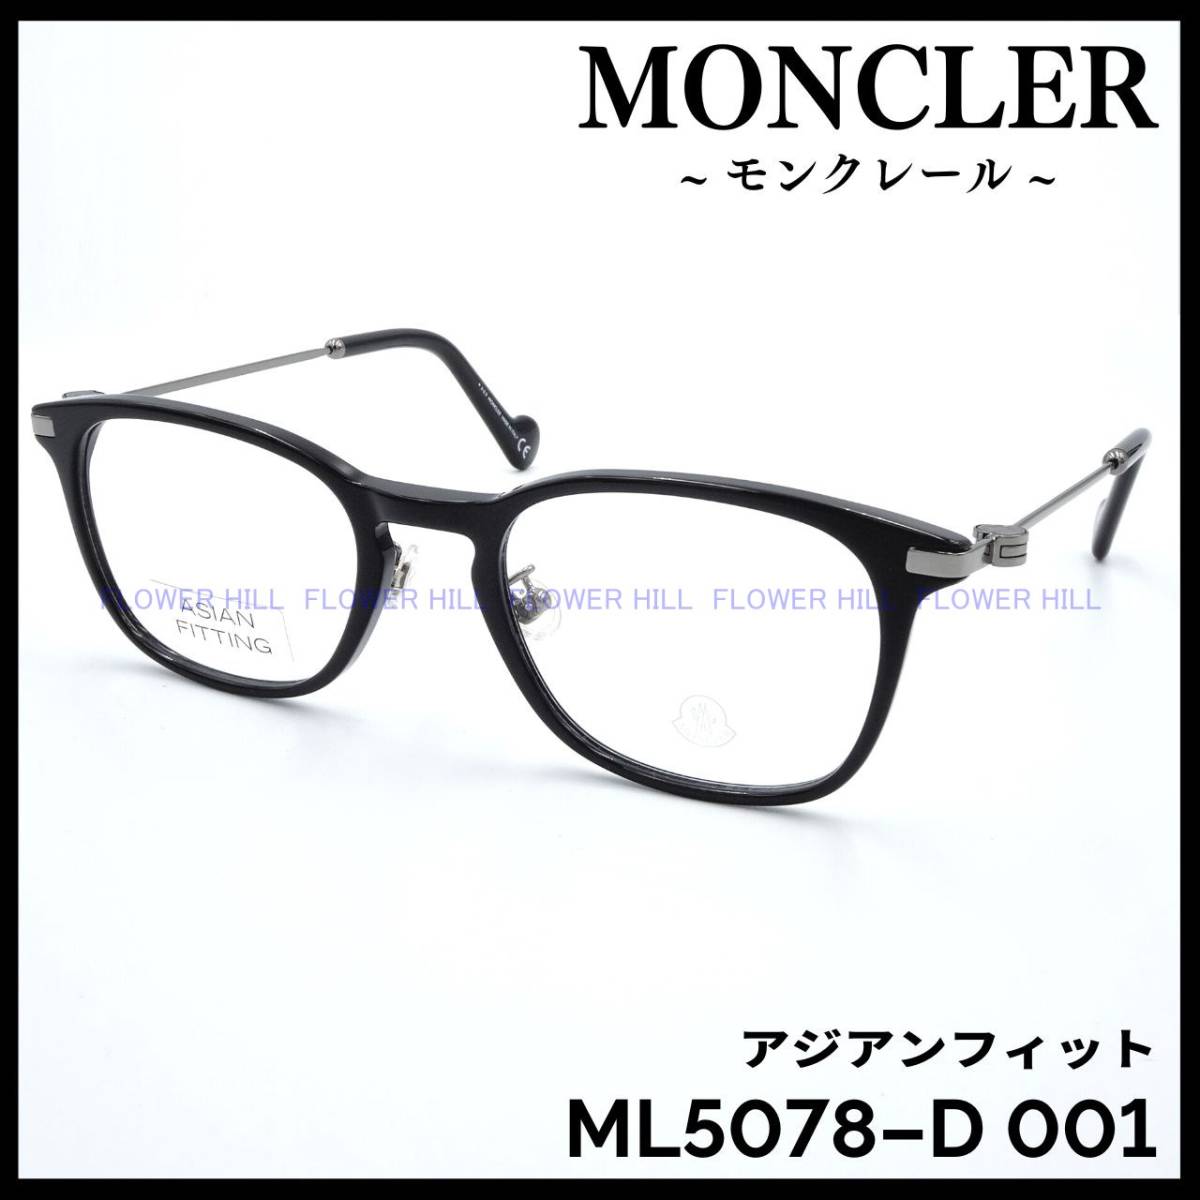 【新品・送料無料】モンクレール MONCLER ML5078-D 001 メガネ フレーム アジアンフィット ブラック イタリア製 メンズ レディース